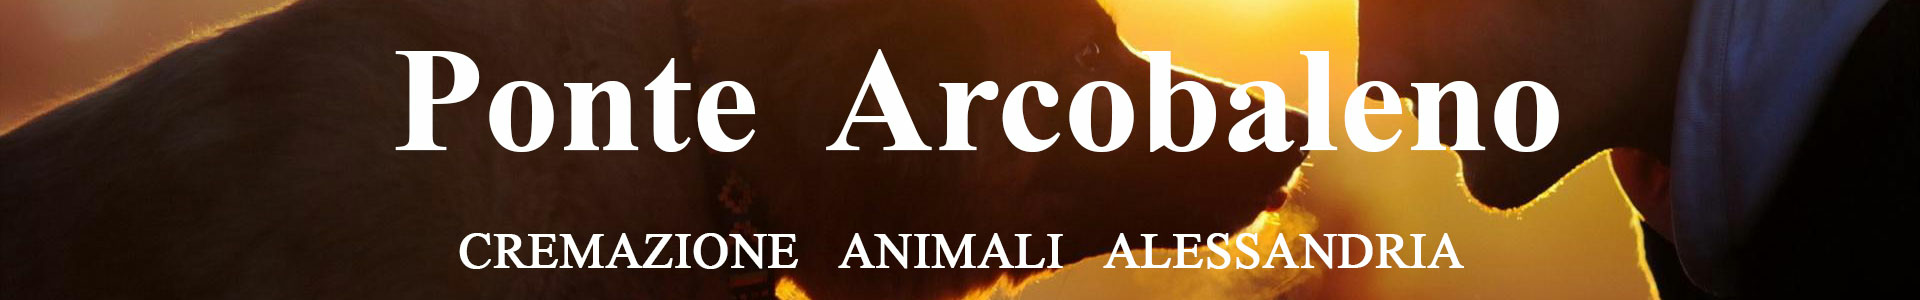 Cremazione Animali Alessandria